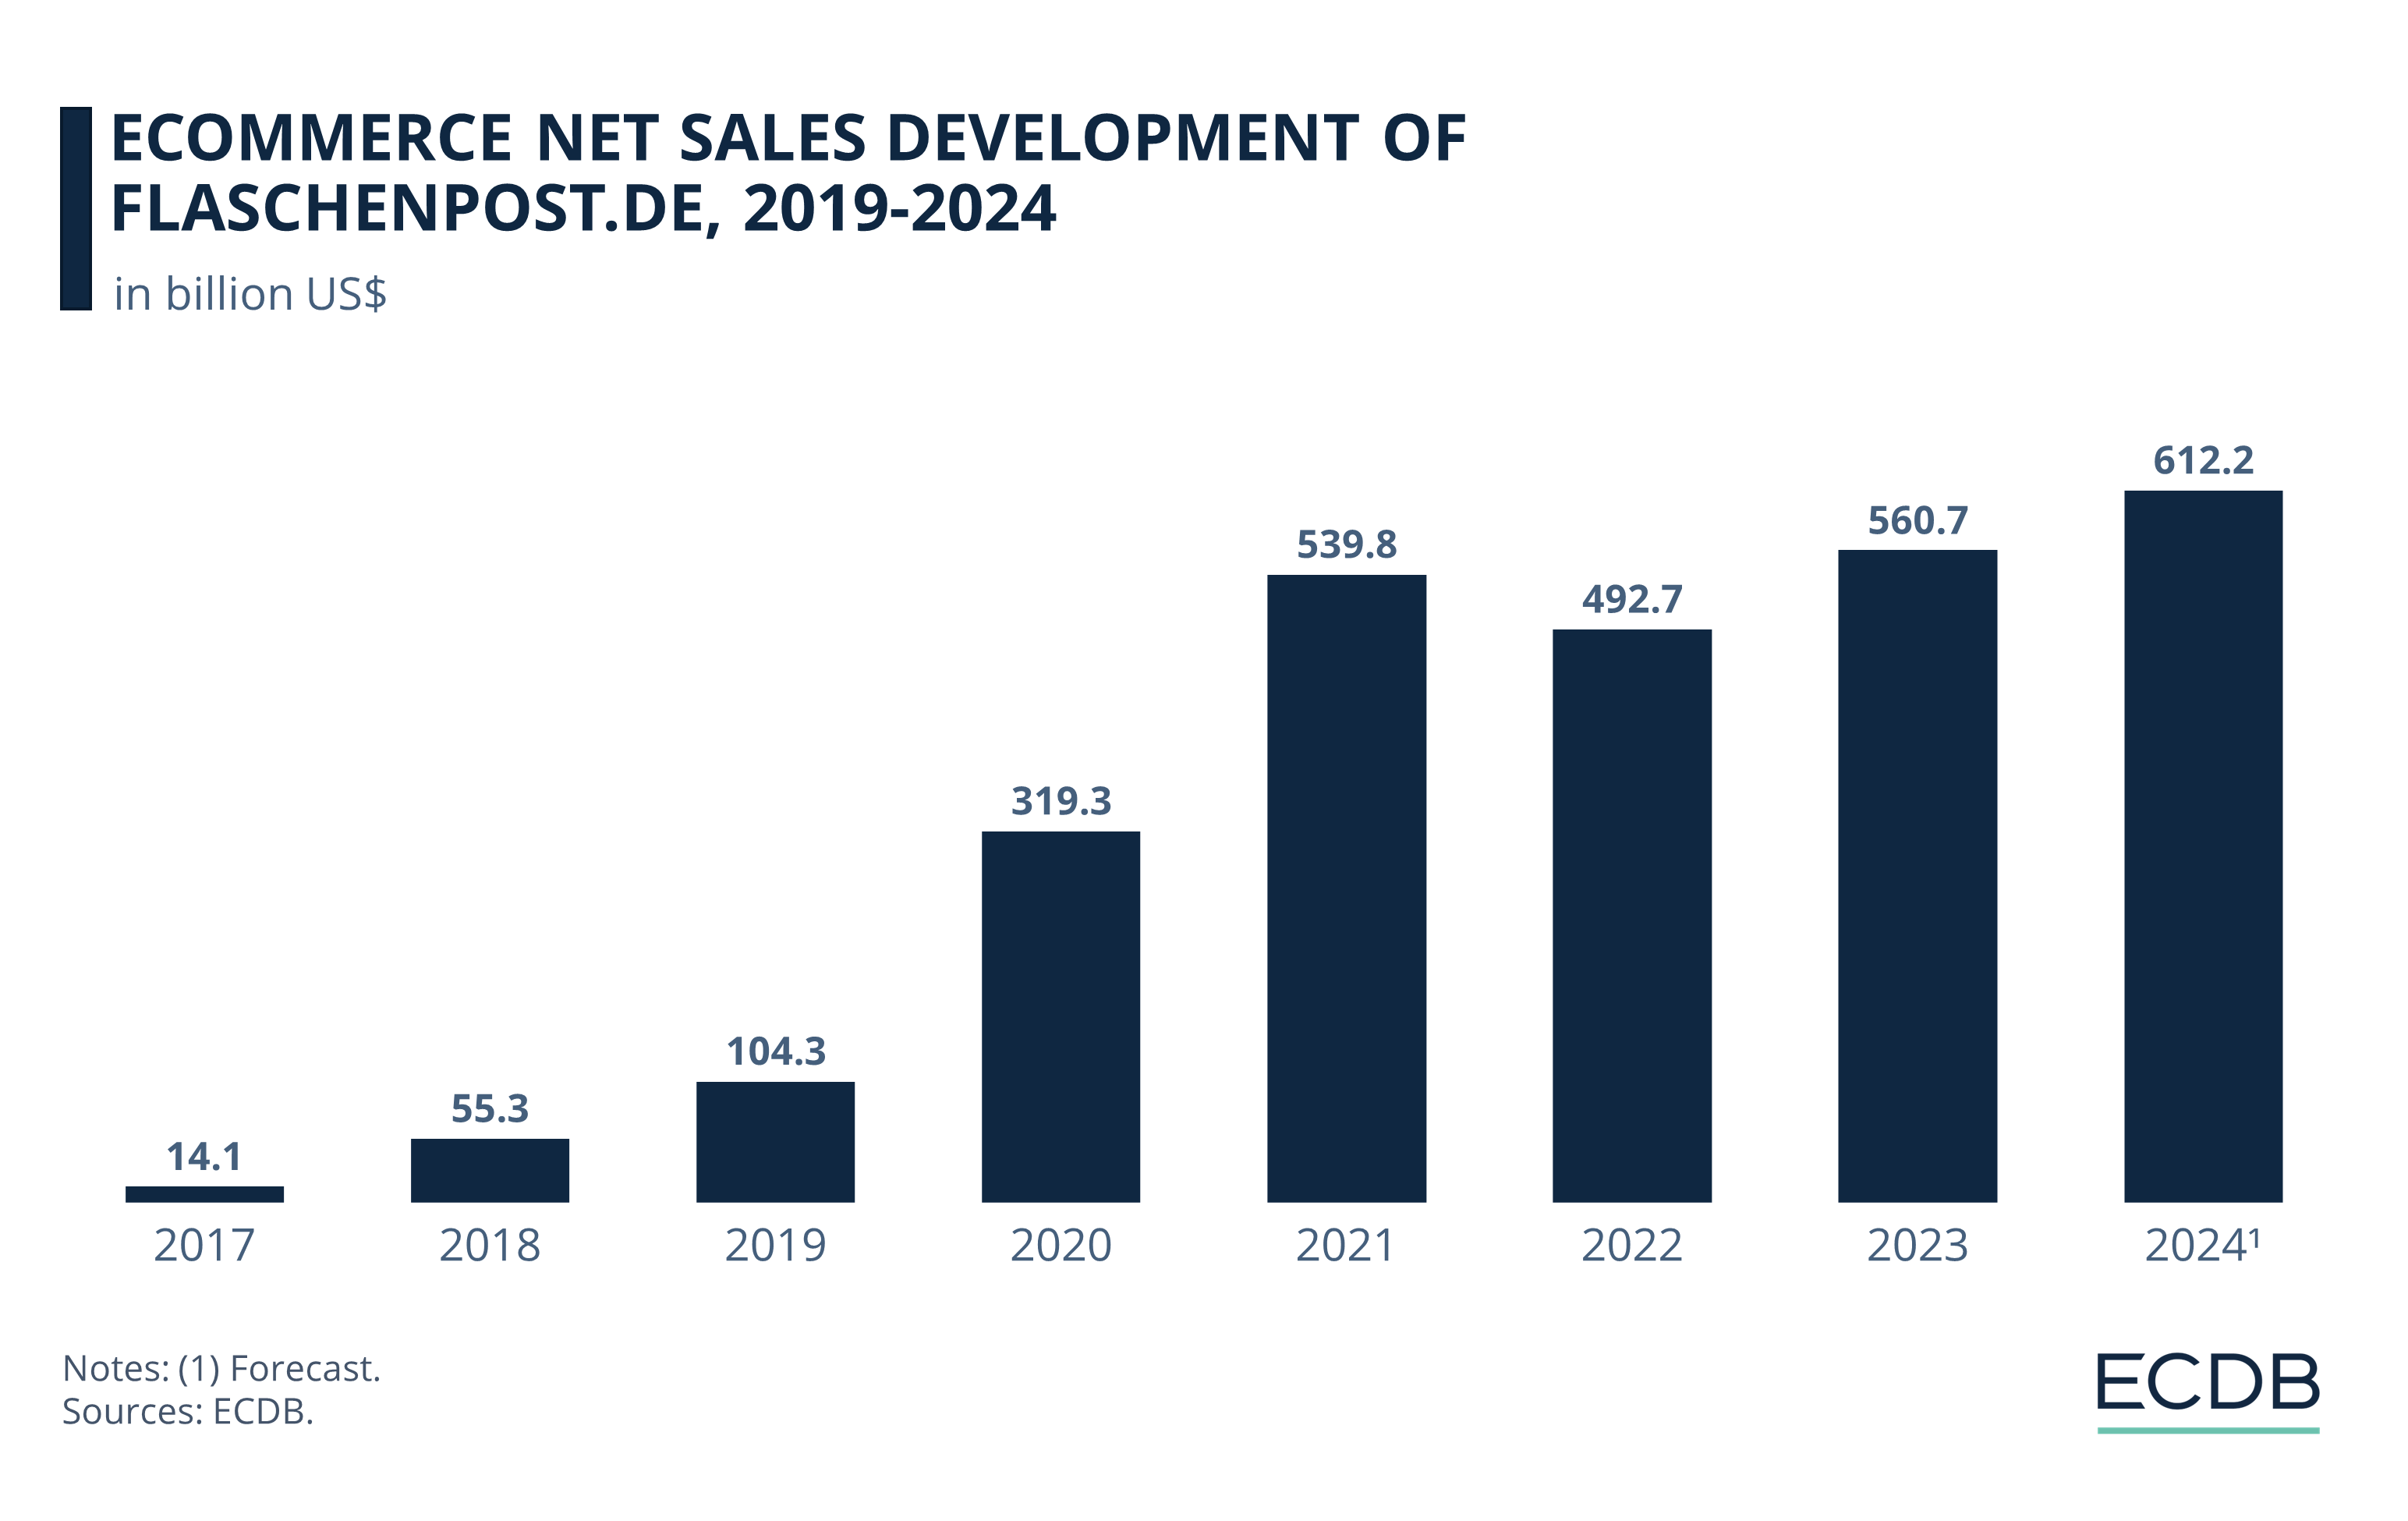 eCommerce Net Sales Development of Flaschenpost.de, 2017-2024